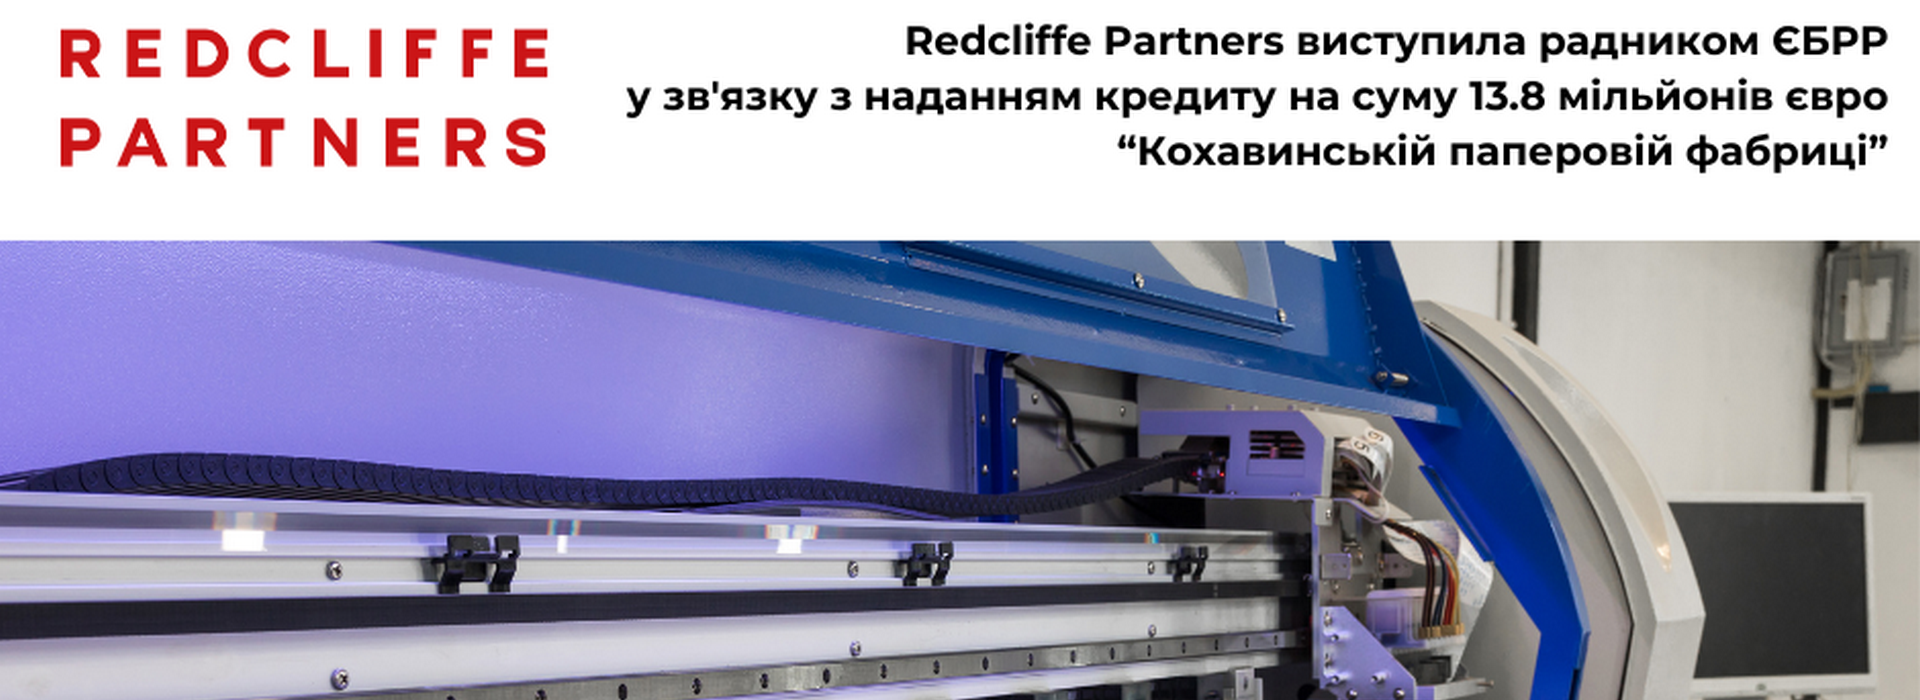 Redcliffe Partners виступила українським юридичним радником ЄБРР у зв’язку з наданням кредиту на суму 13.8 мільйонів євро “Кохавинській паперовій фабриці”